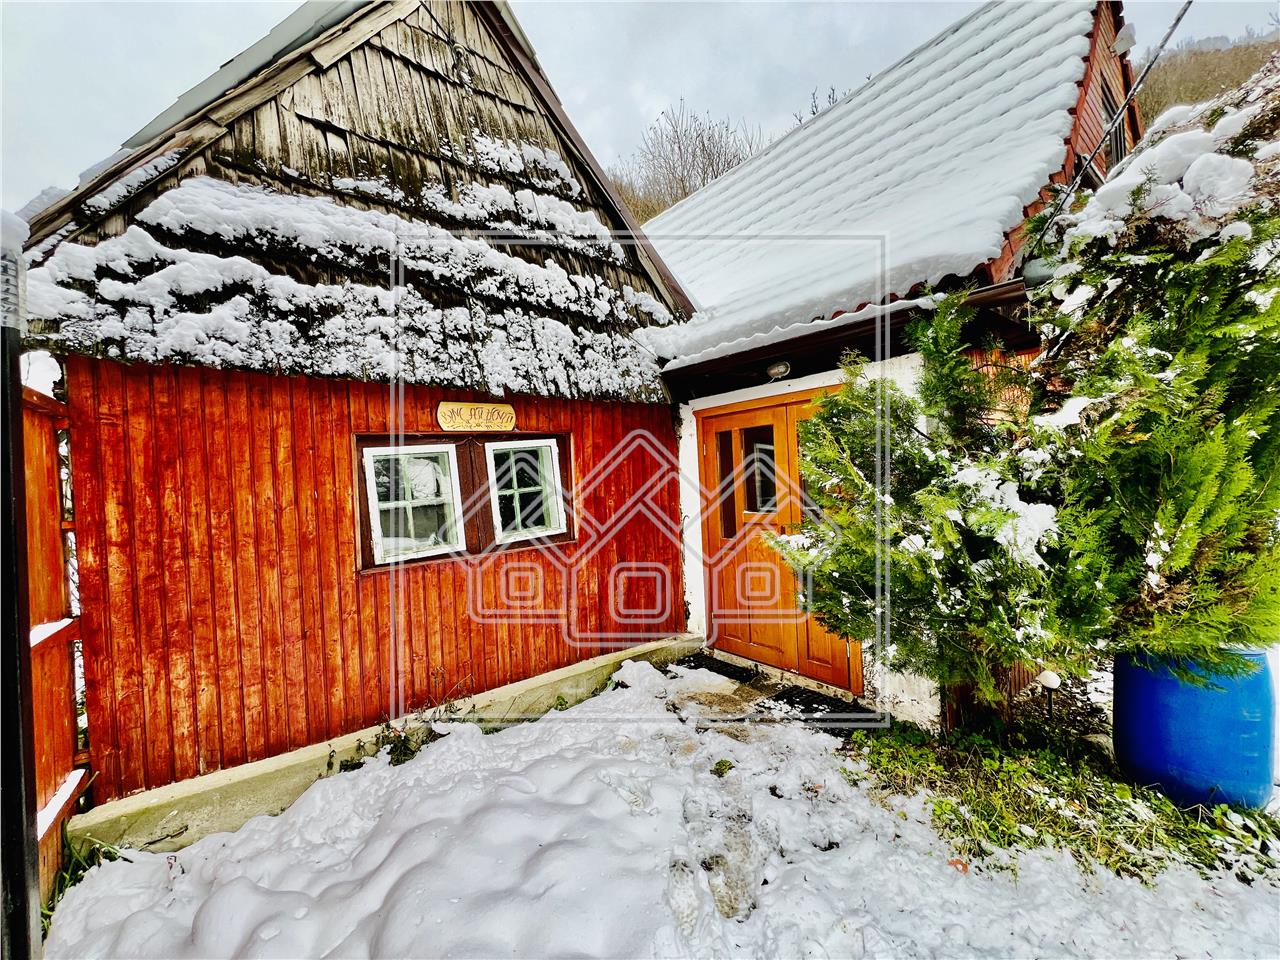 Casa de vacanta in Sibiu - Valea Lotrioarei - sauna, filigorie, ciubar